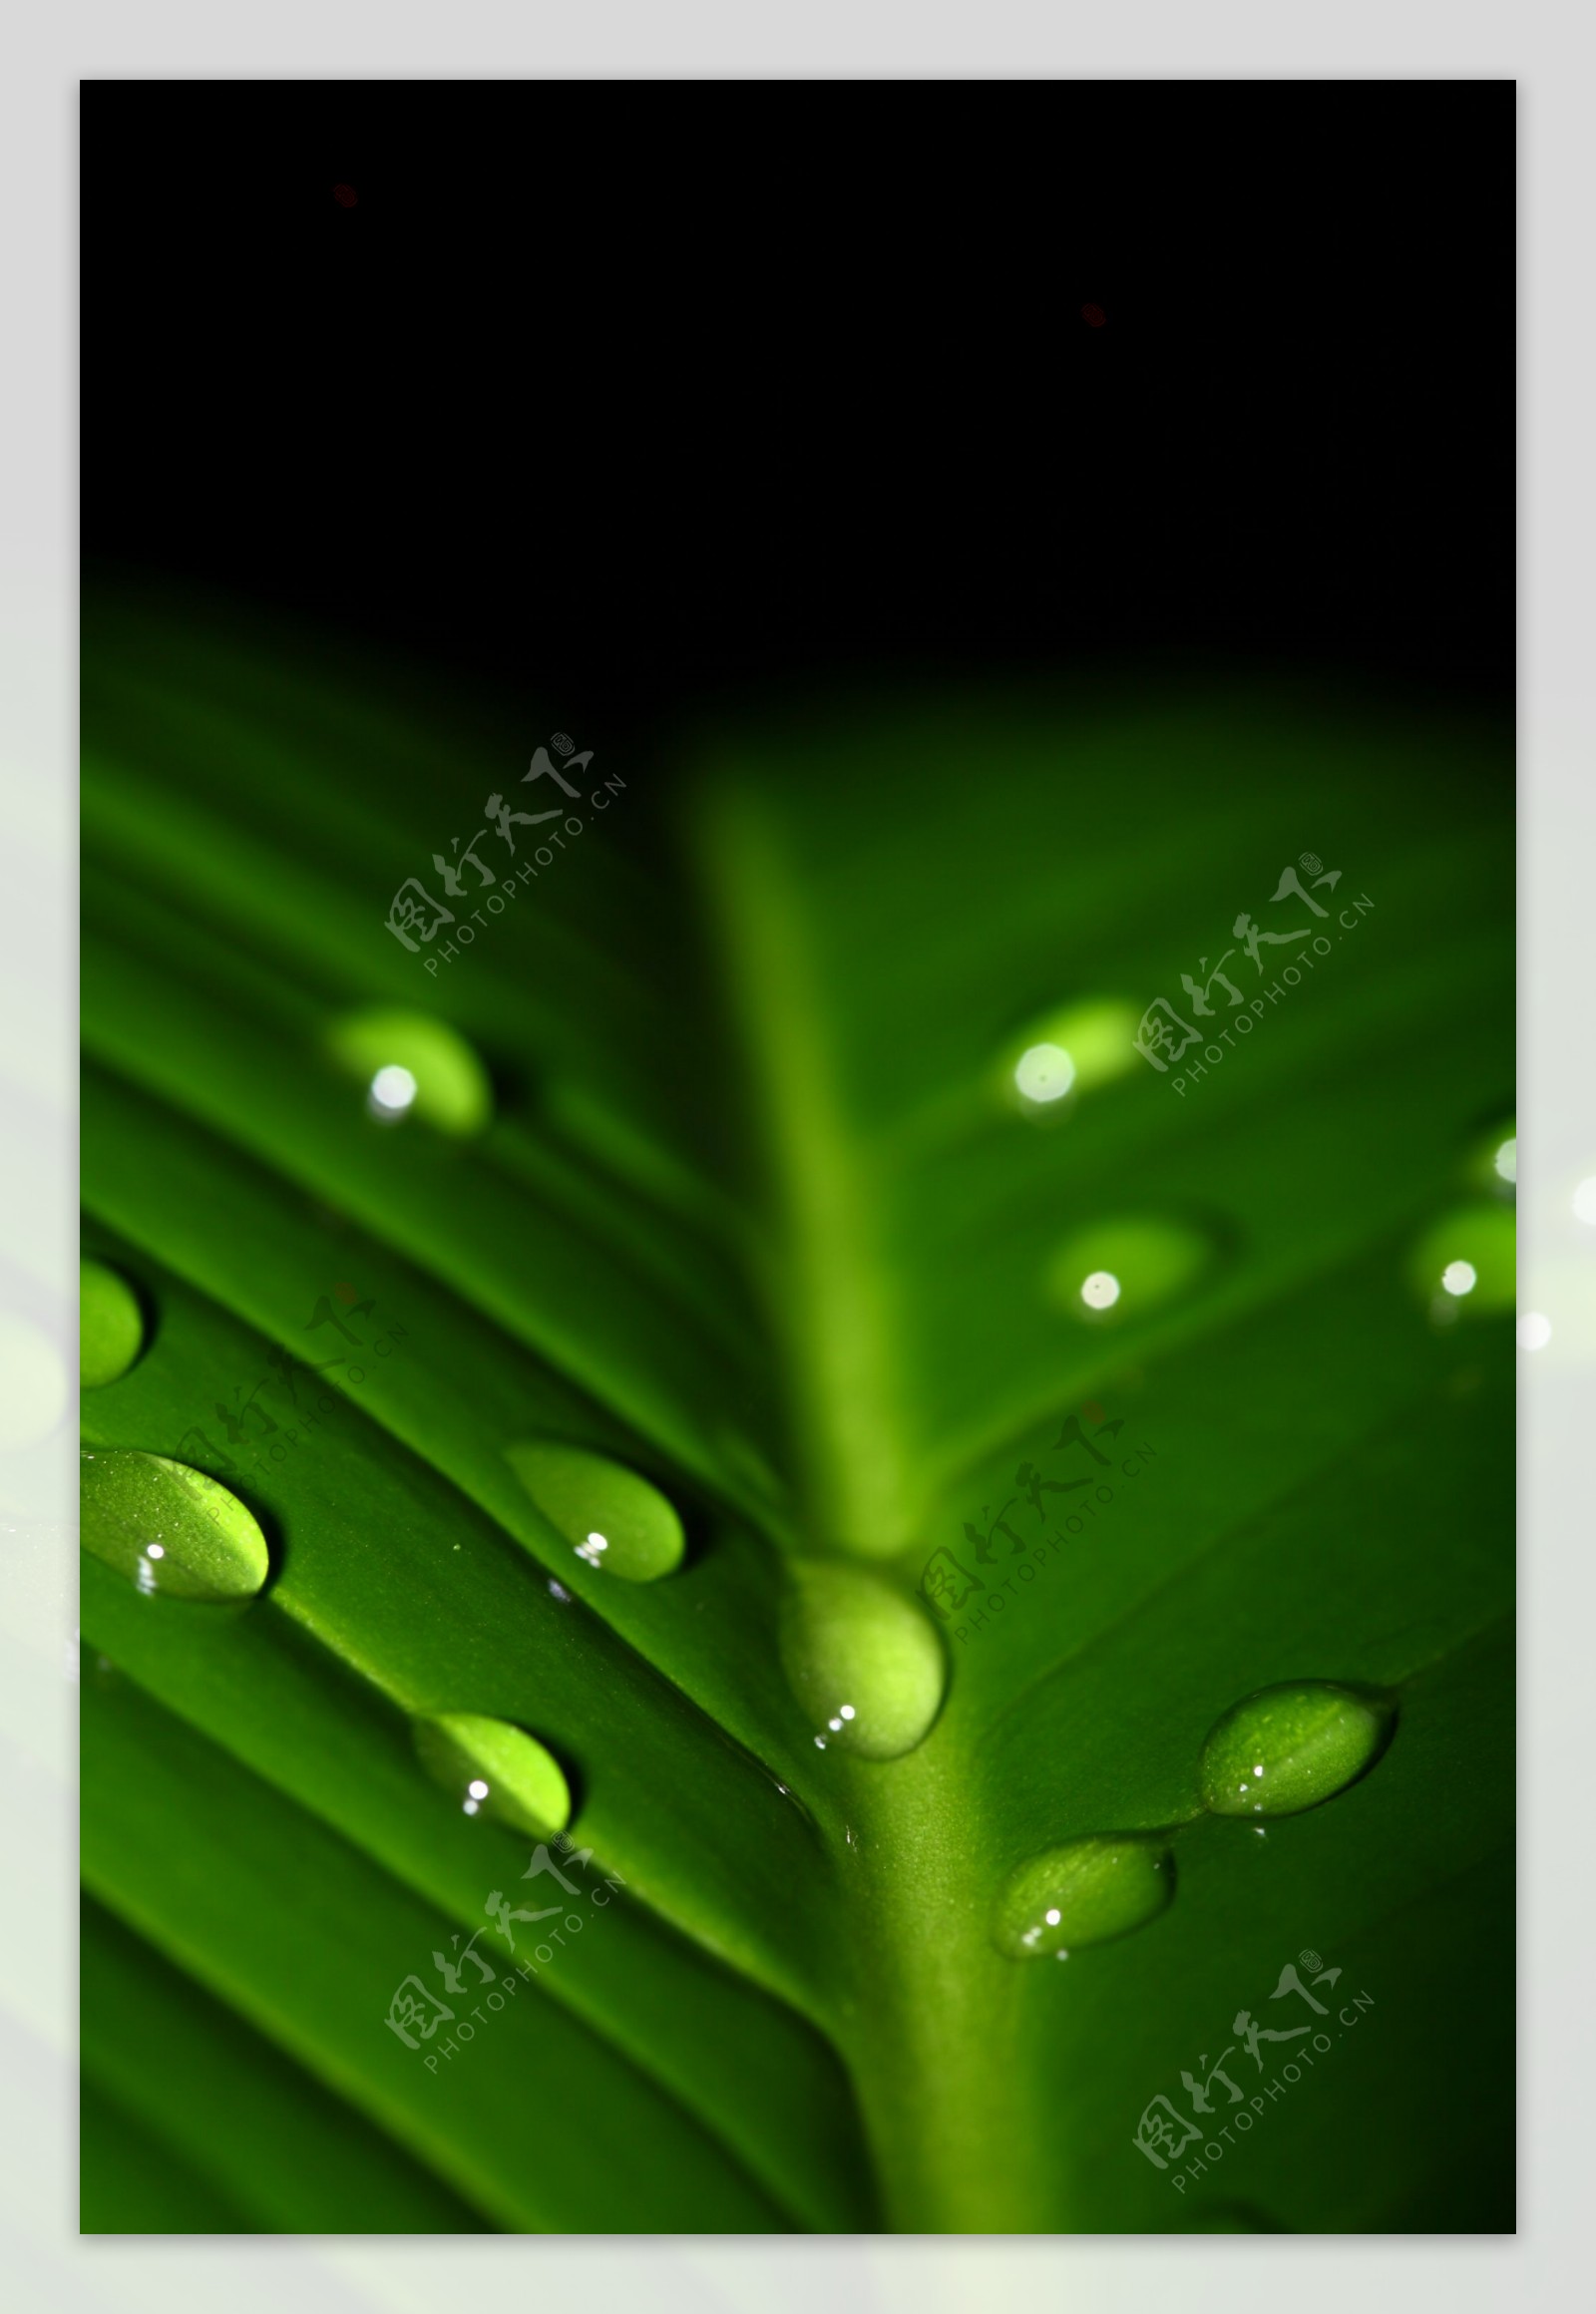 水滴与绿叶高清图片